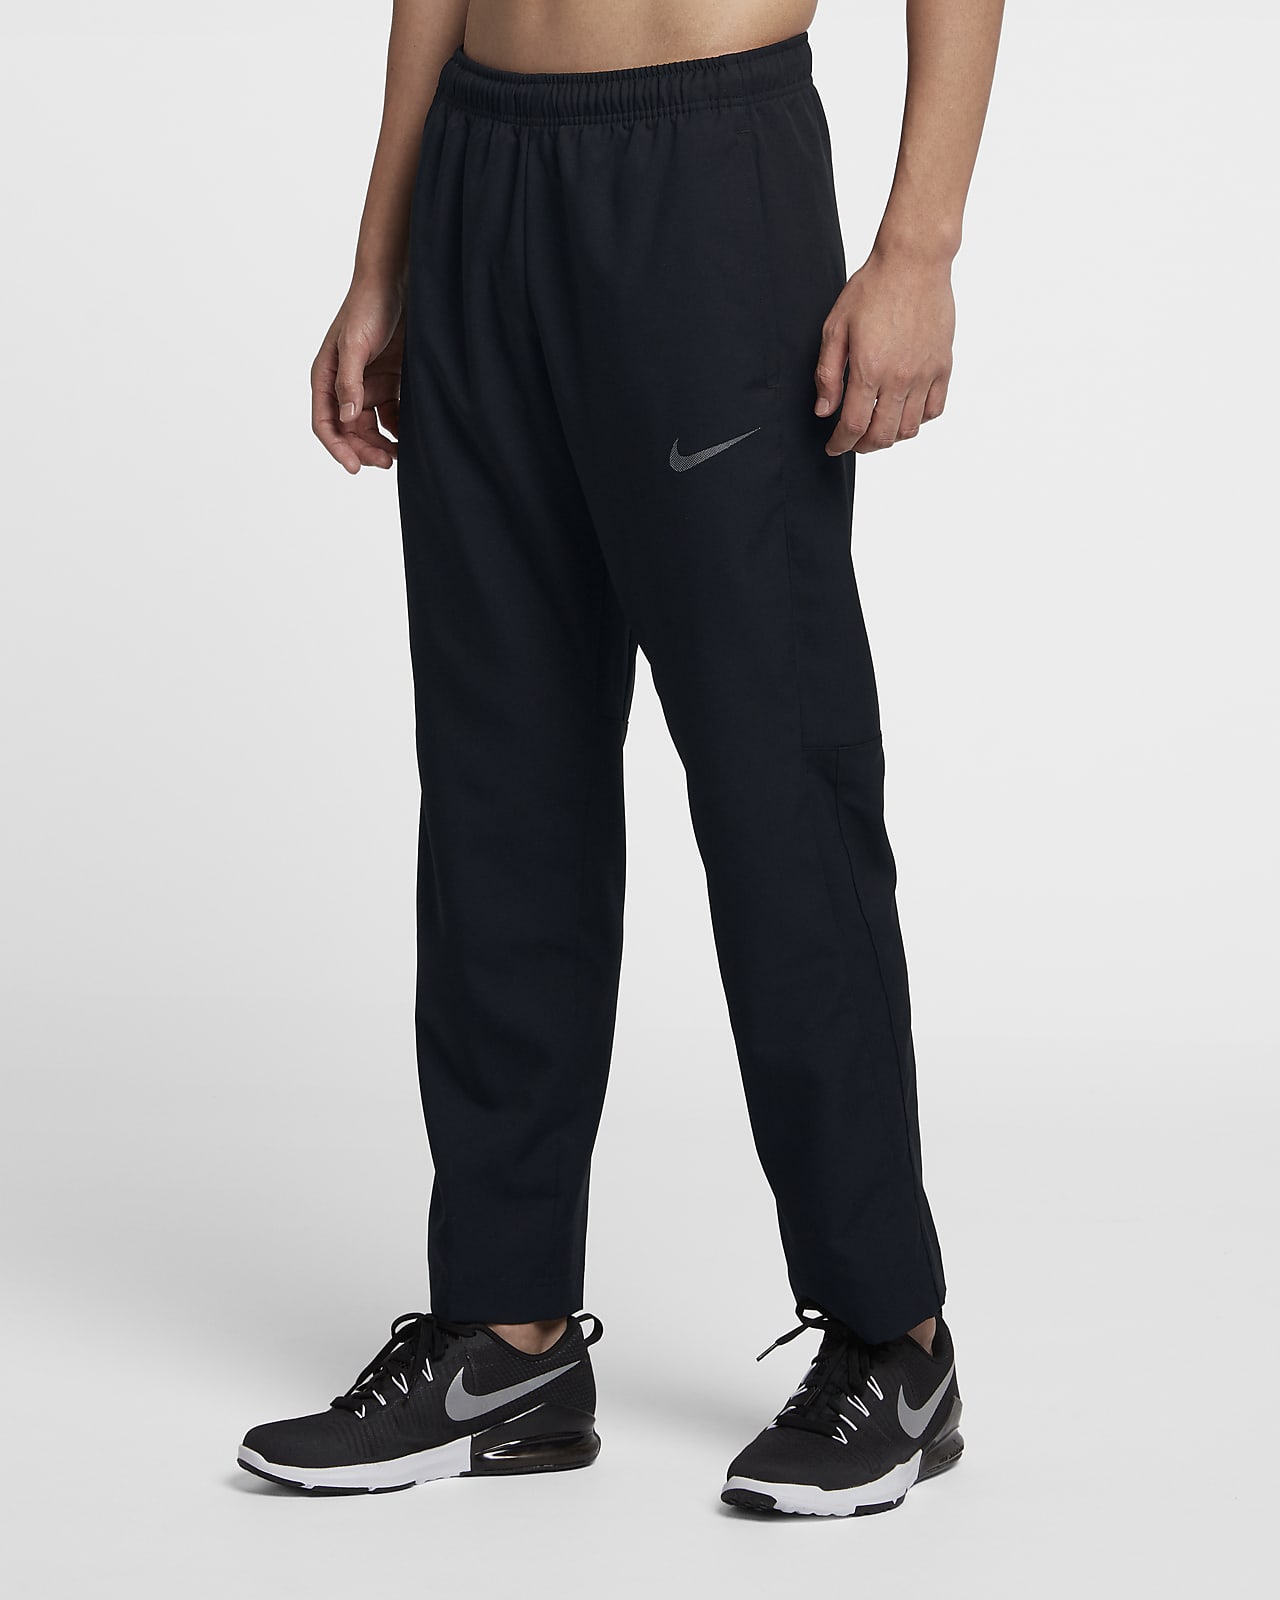 Nike Dri-FIT Men's Training Trousers 